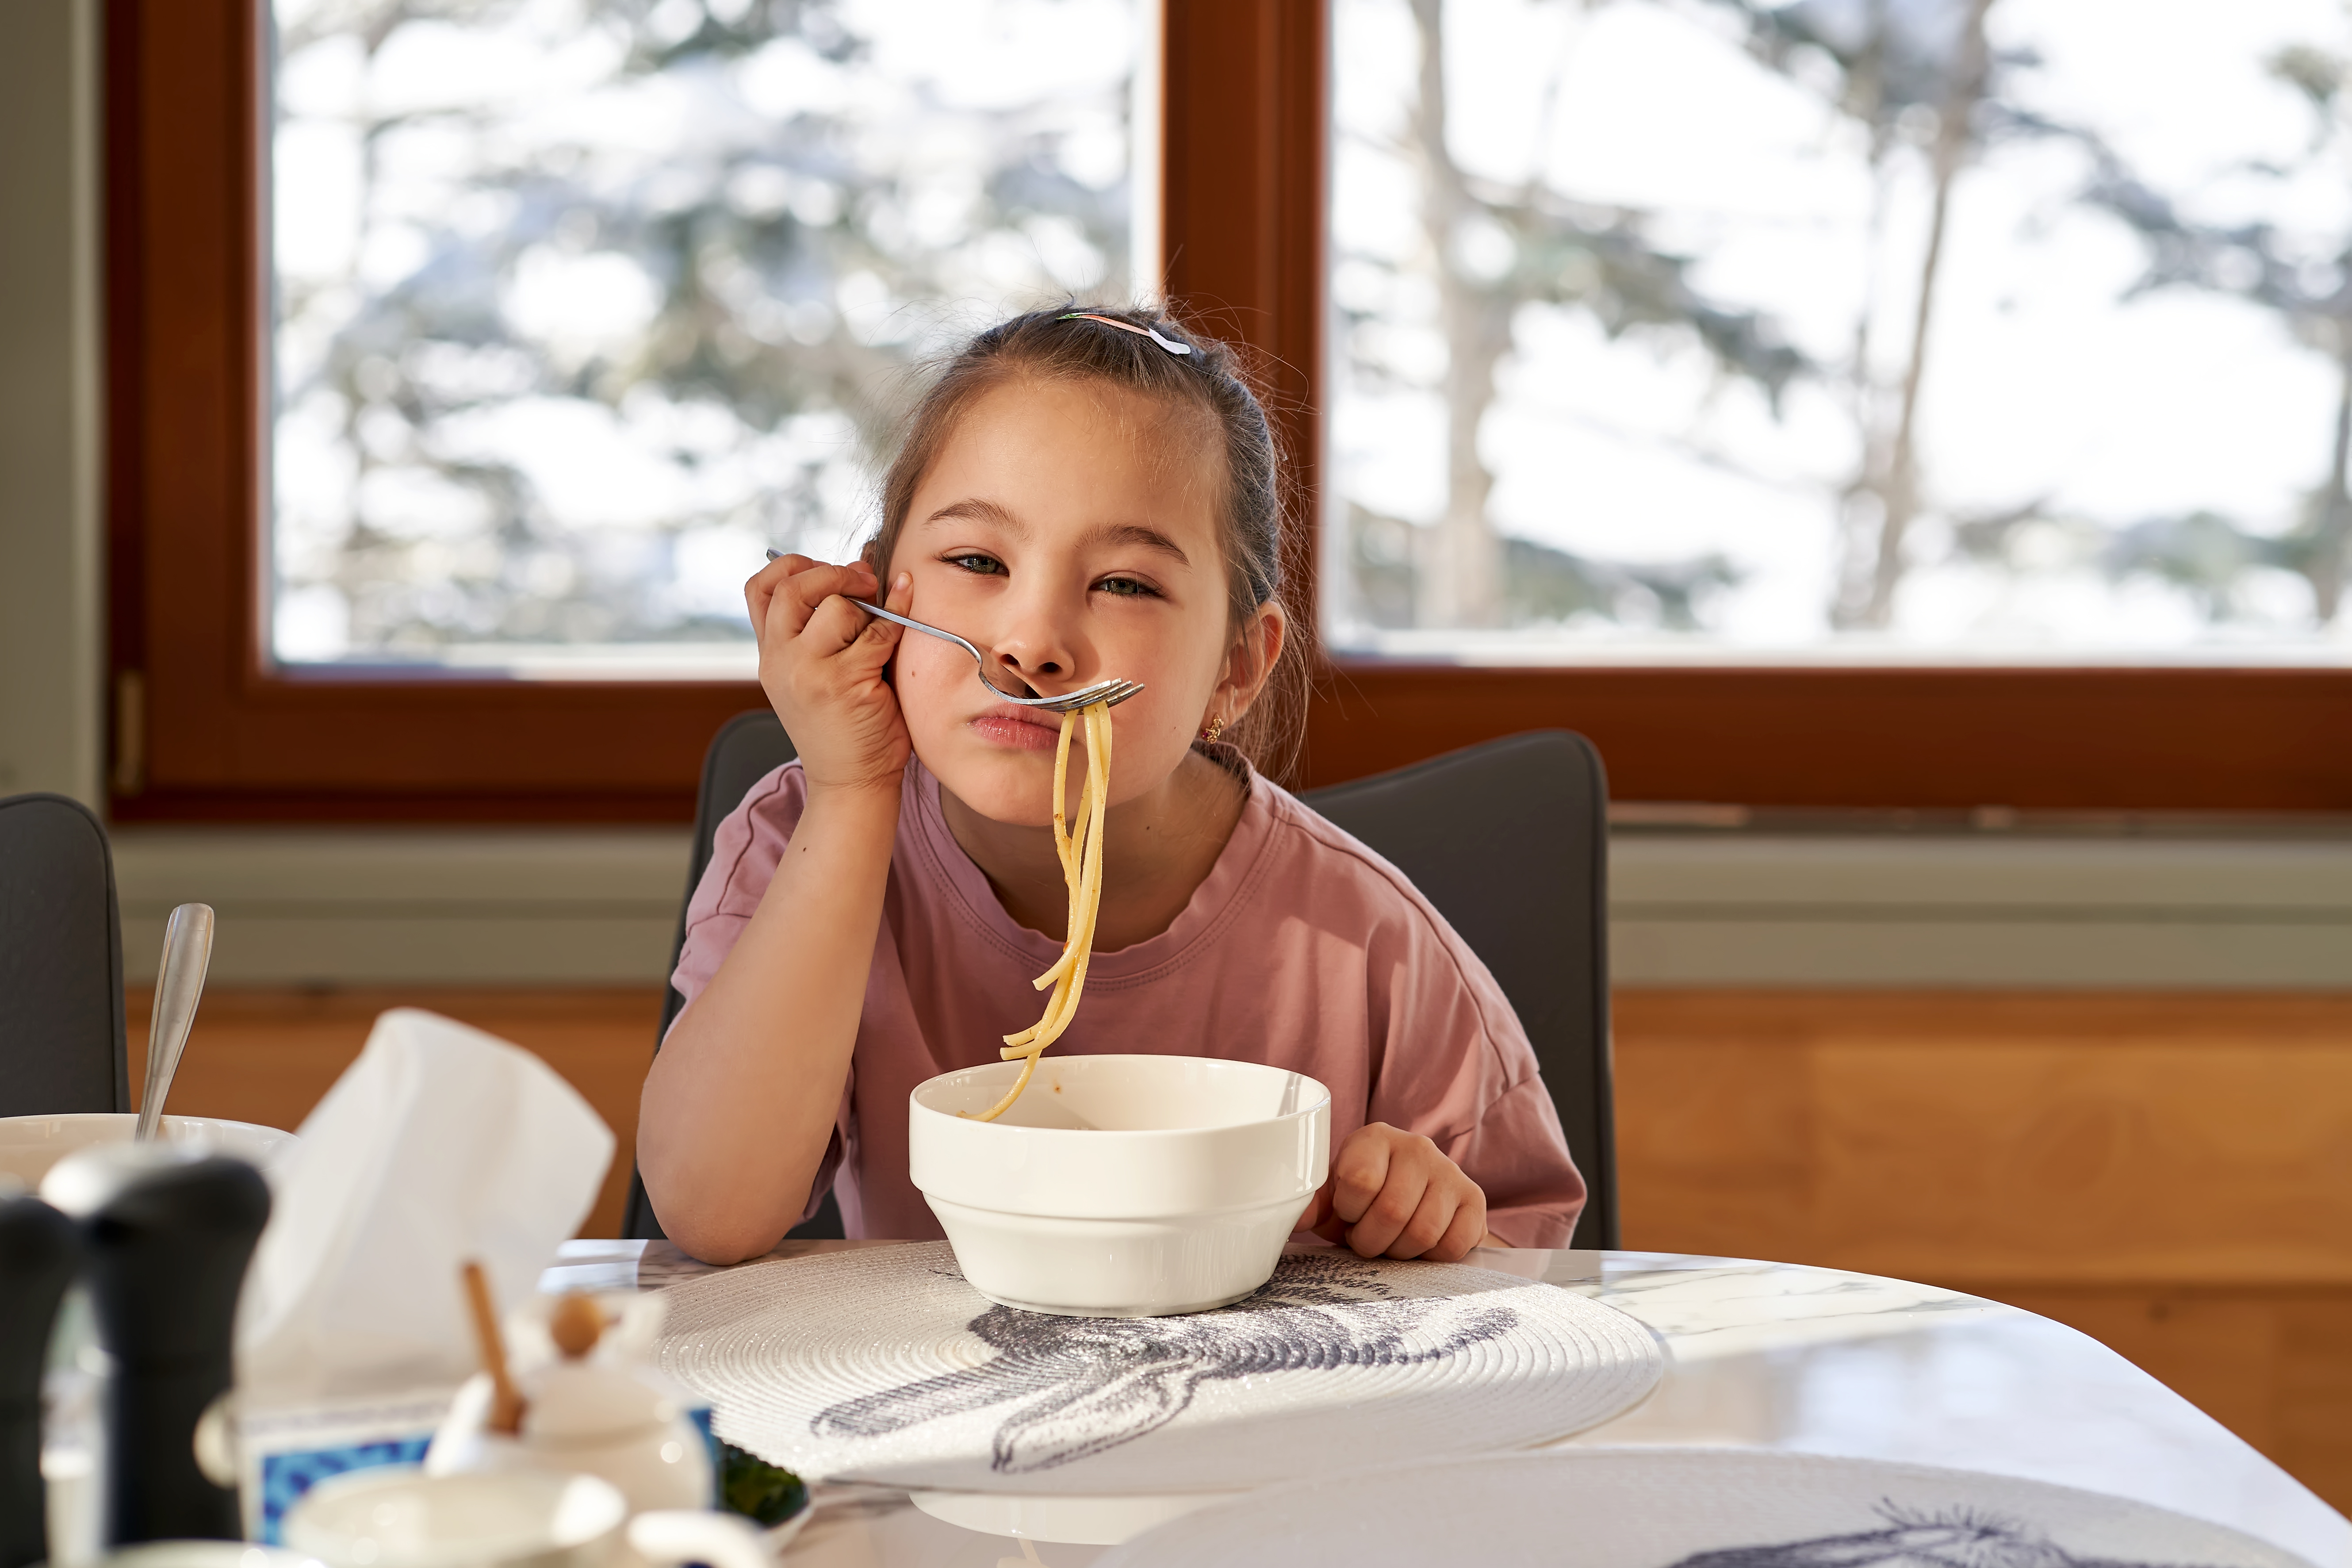 La chica se prueba los espaguetis como un bigote | Foto: Getty Images